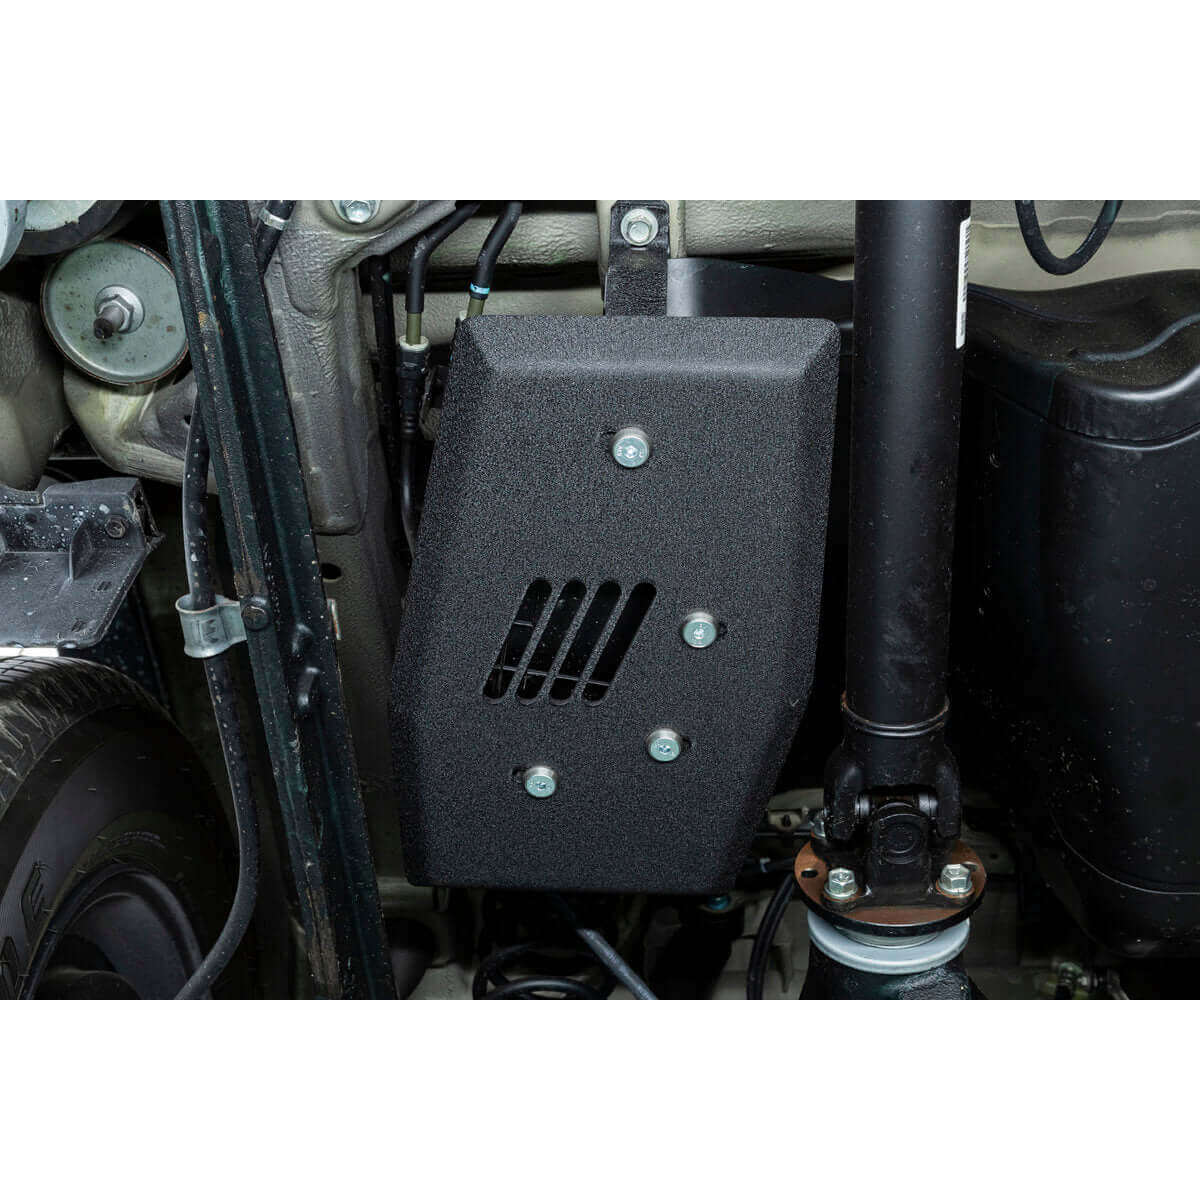 Actief koolfilter met onderdoorrijbeveiliging voor Suzuki Jimny GJ/HJ